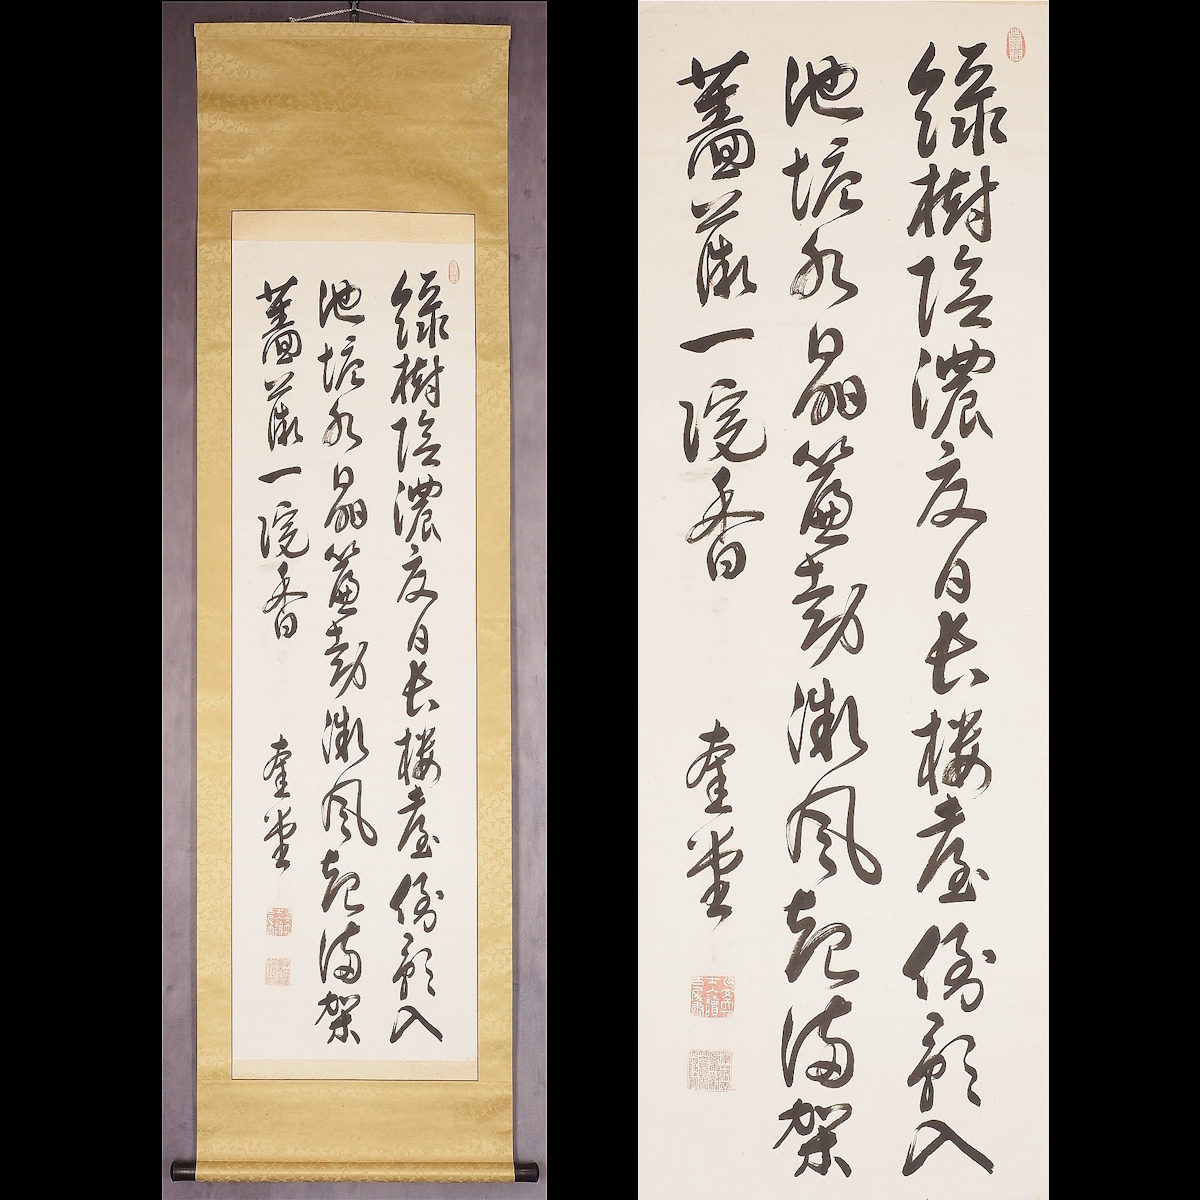 [Authentisch] [Watarikan] [Kiyoura Keigo] 12690 Hängerolle, Dreizeilige Kalligraphie, Kasten, Papier, Kumamoto, Higo, Politiker, eingeschrieben, Kunstwerk, Buch, Hängerolle